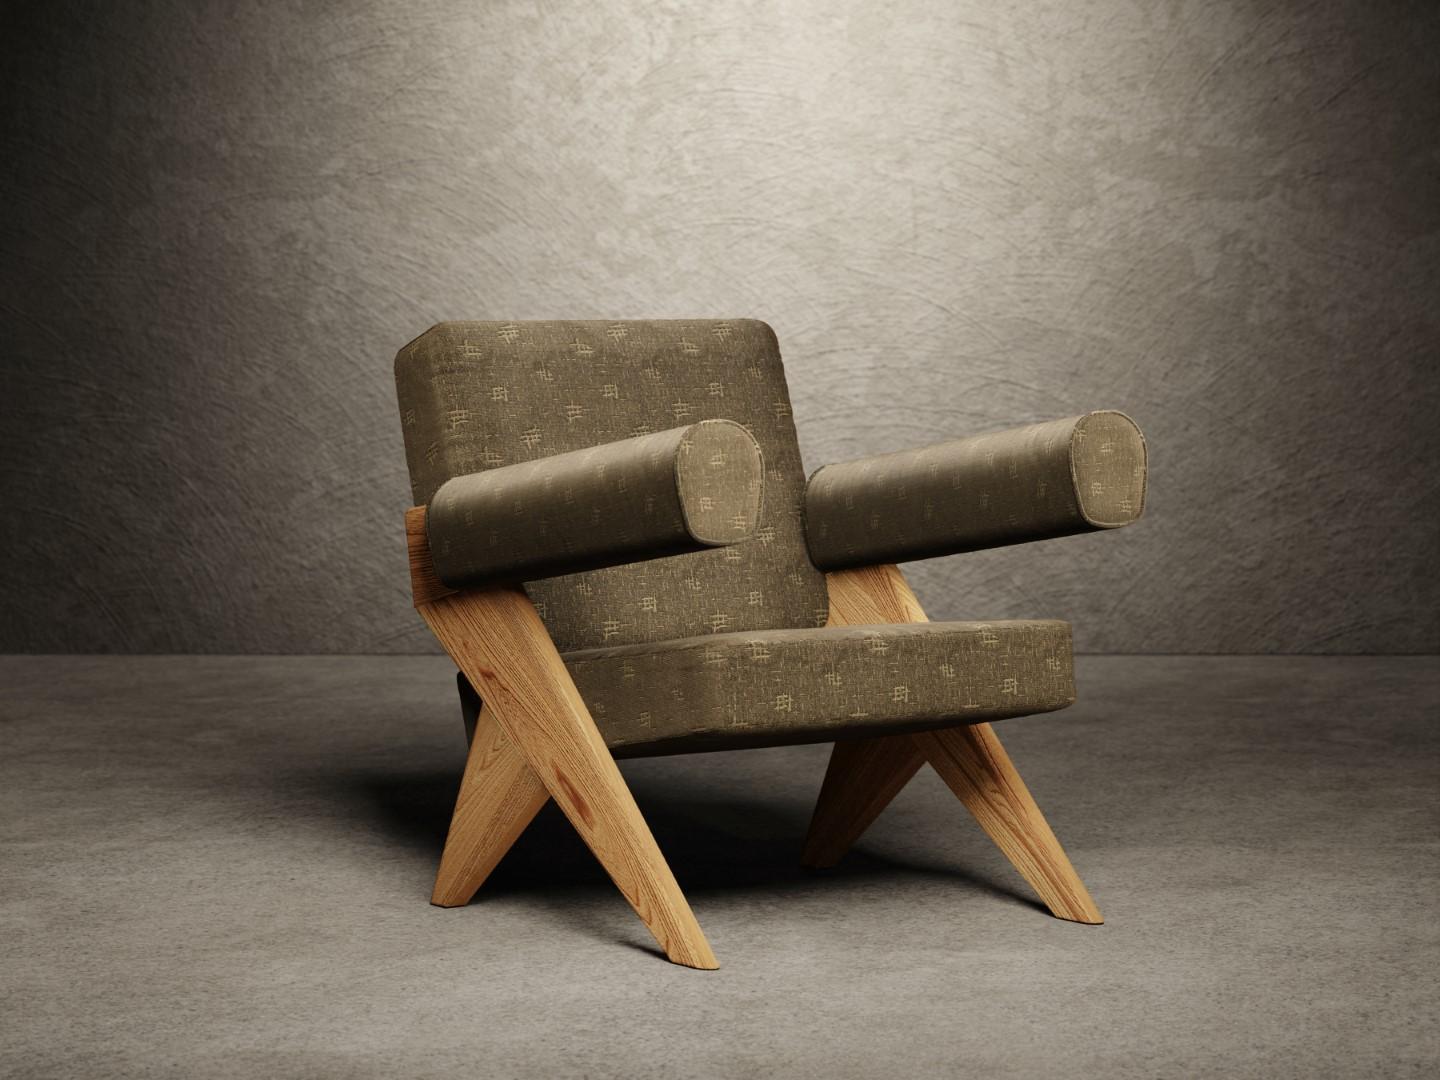 Der Sessel Souvenir besteht aus zwei strukturellen Seiten aus sandgestrahltem Ulmenholz, die mit einem matten Lack in Natur oder Dunkelheit lackiert sind. 
Sitz und Rückenlehne sind mit Polyurethanschaum gepolstert und vollständig mit Stoff oder